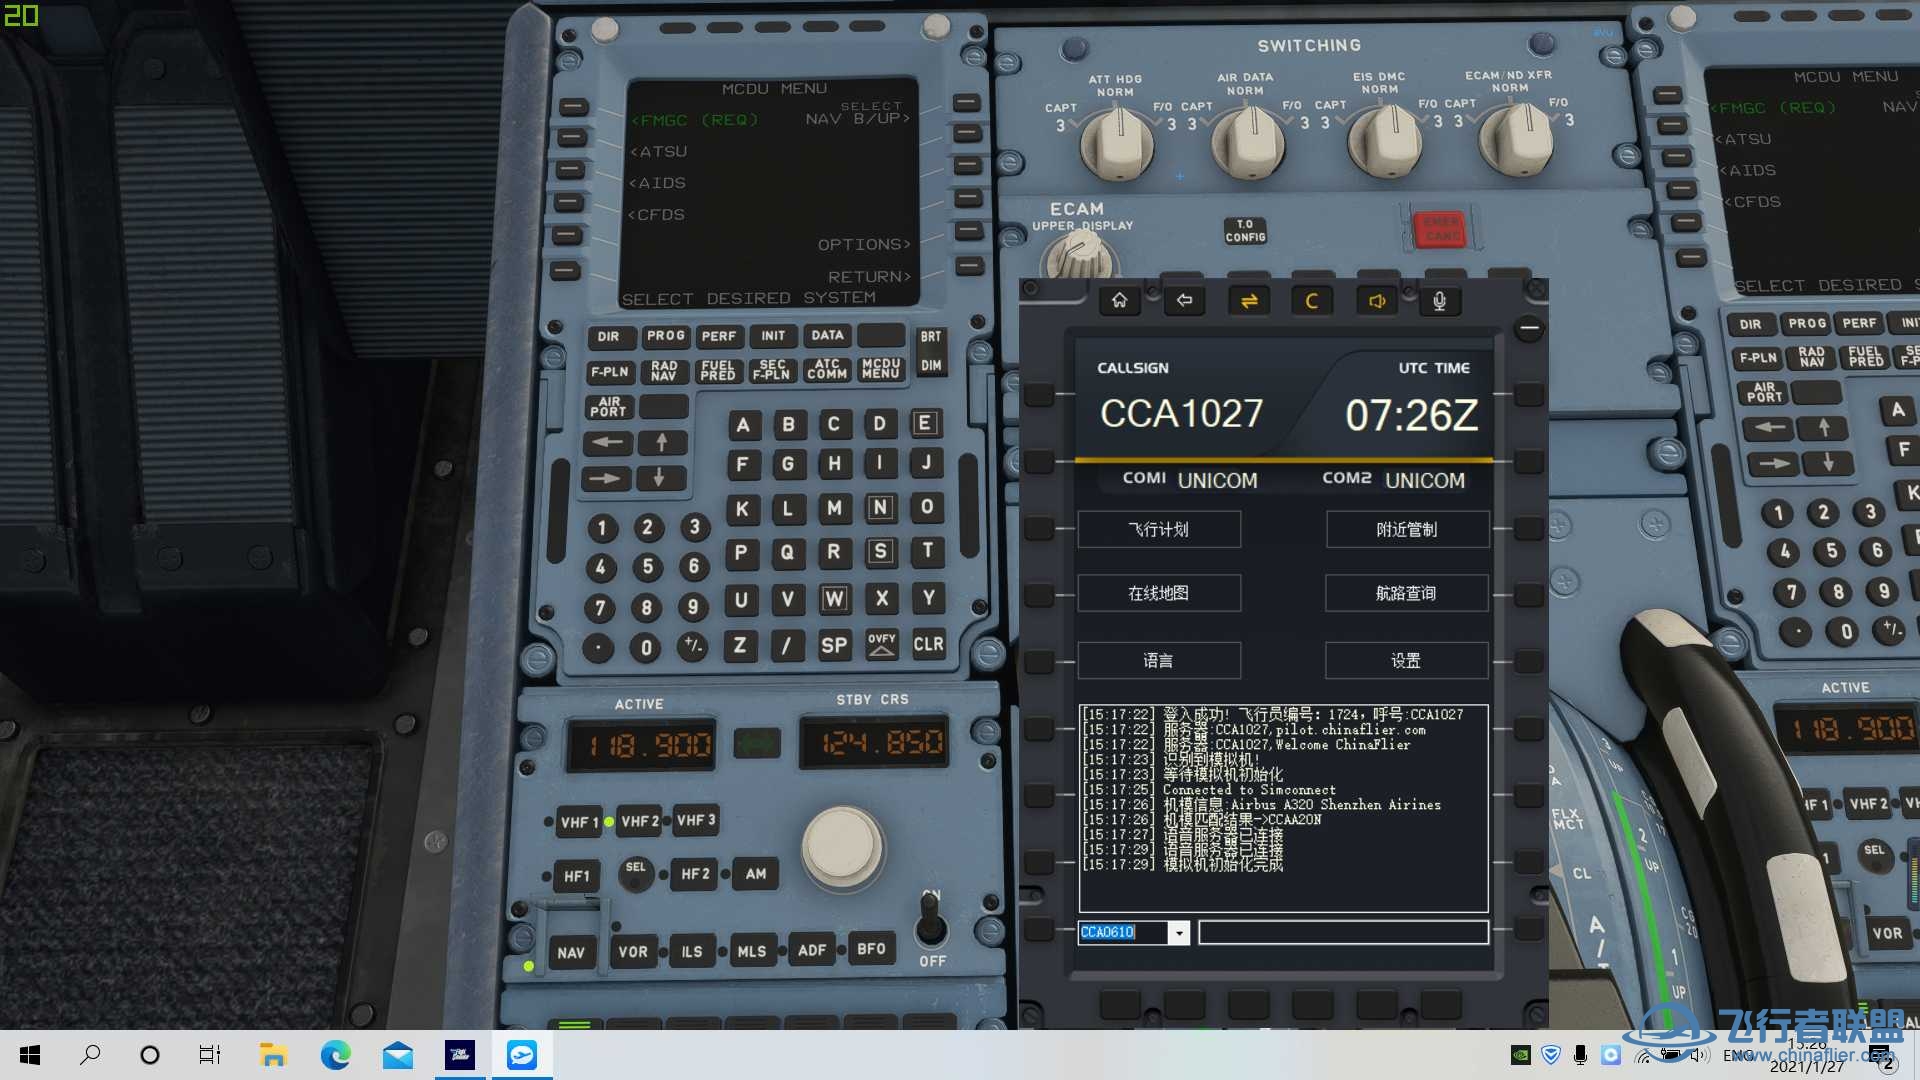 【求助】连飞软件COM1 COM2一直显示UNICOM-2919 